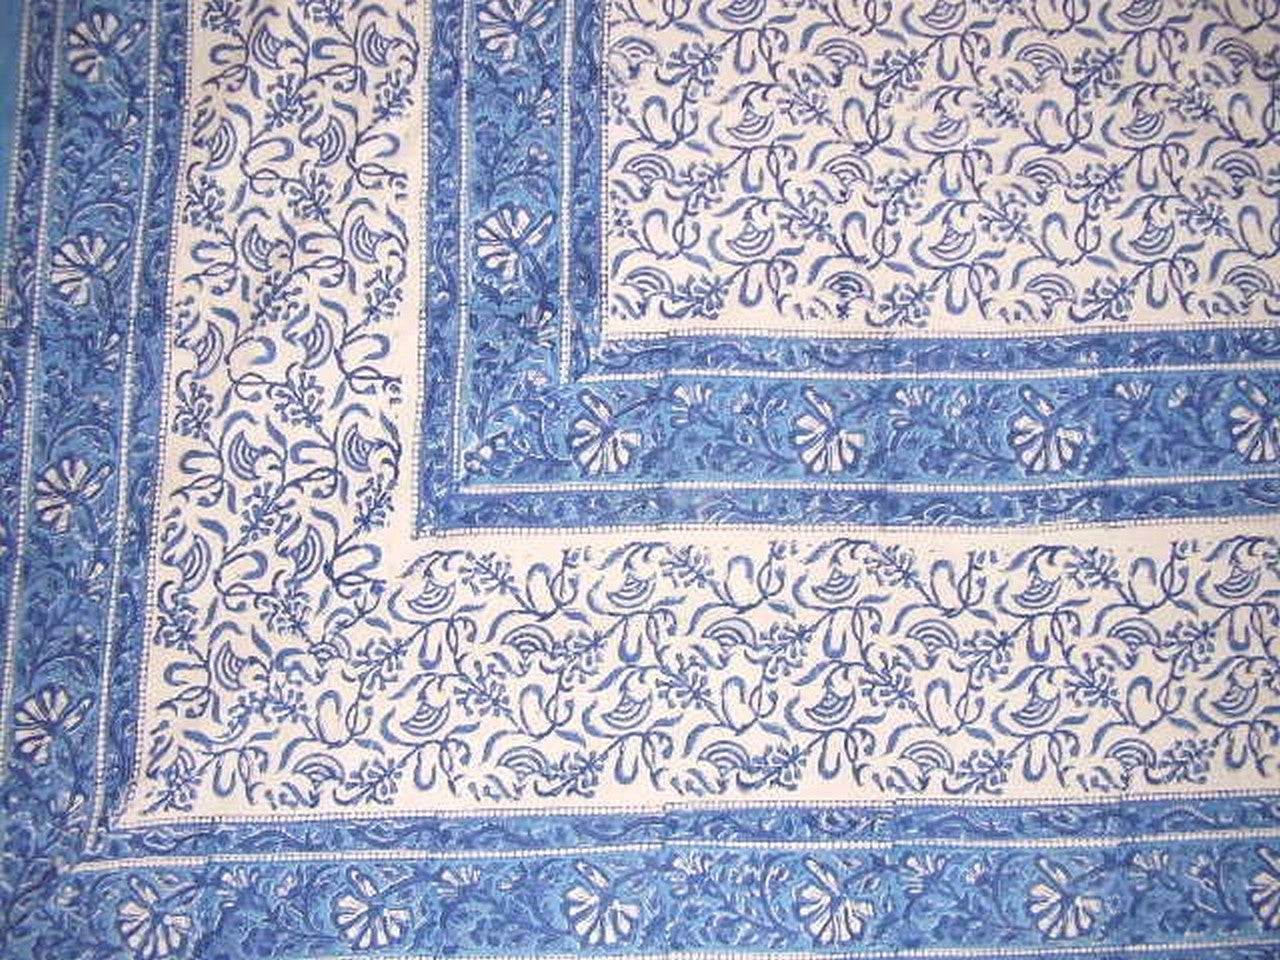 라자스탄 블록 프린트 태피스트리 면 침대보 108" x 82" 풀 퀸 블루